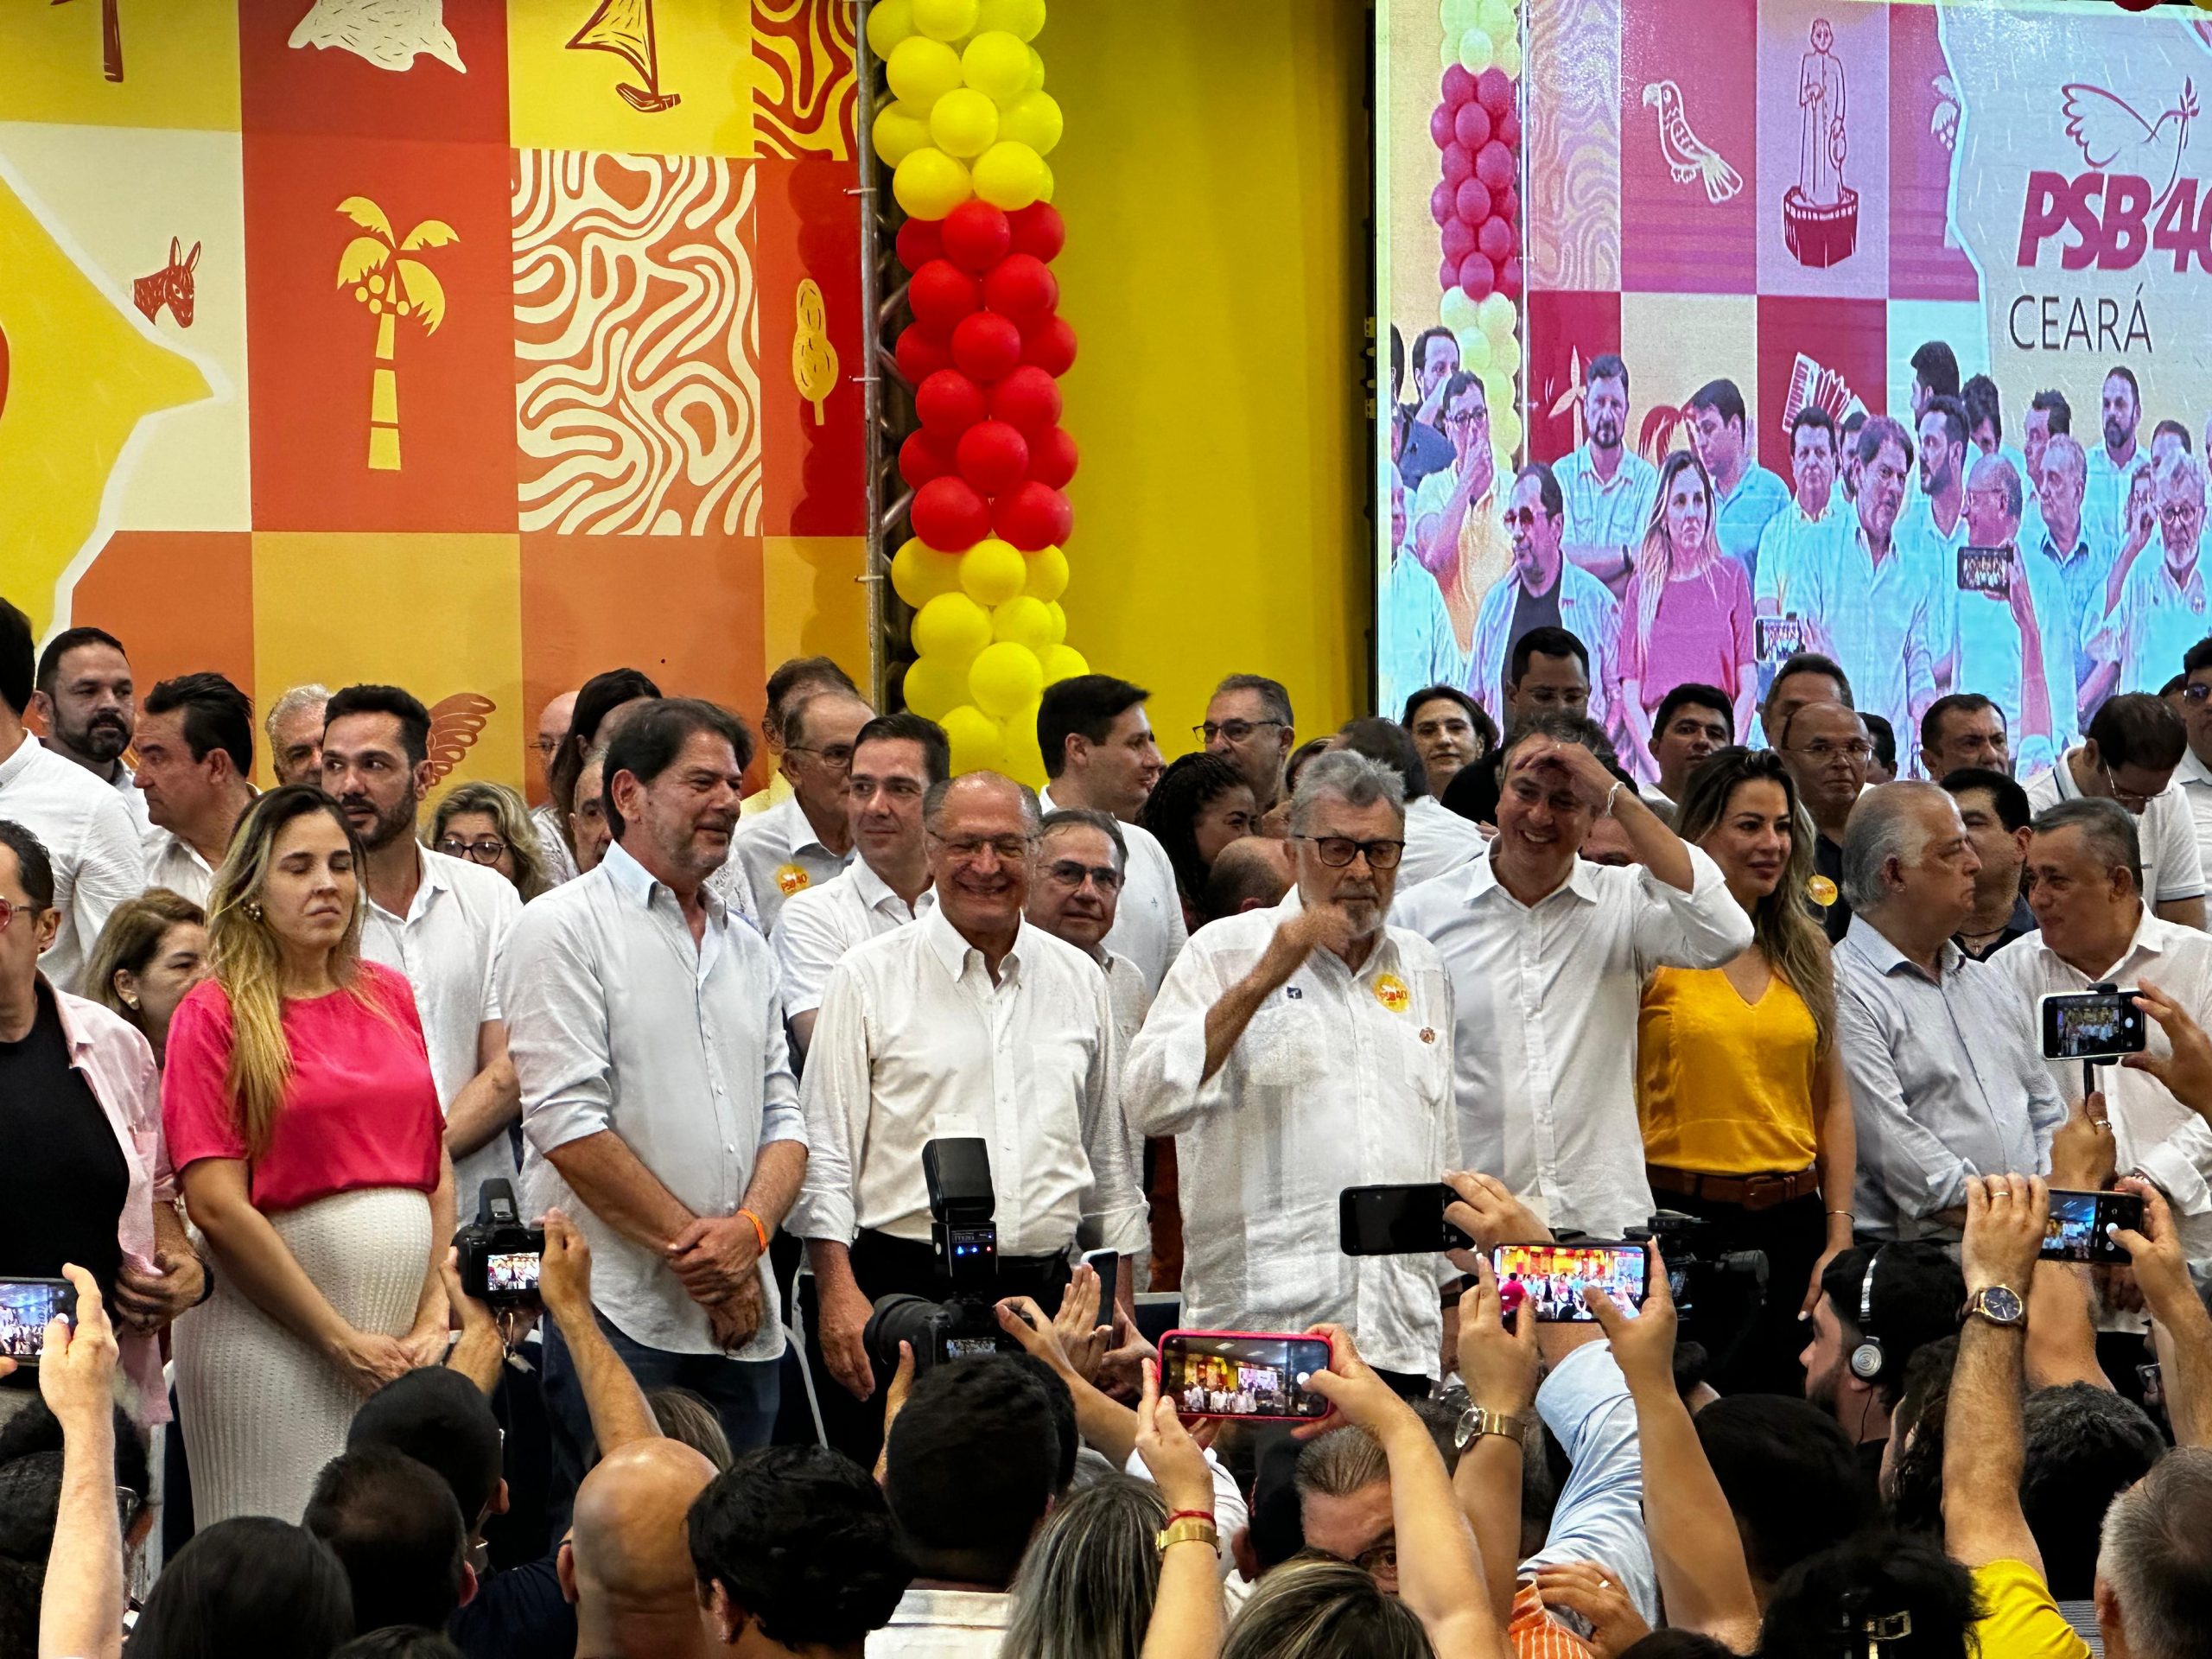 PSB Ceará filia Cid Gomes, Izolda Cela e 34 prefeitos neste domingo; saiba quais